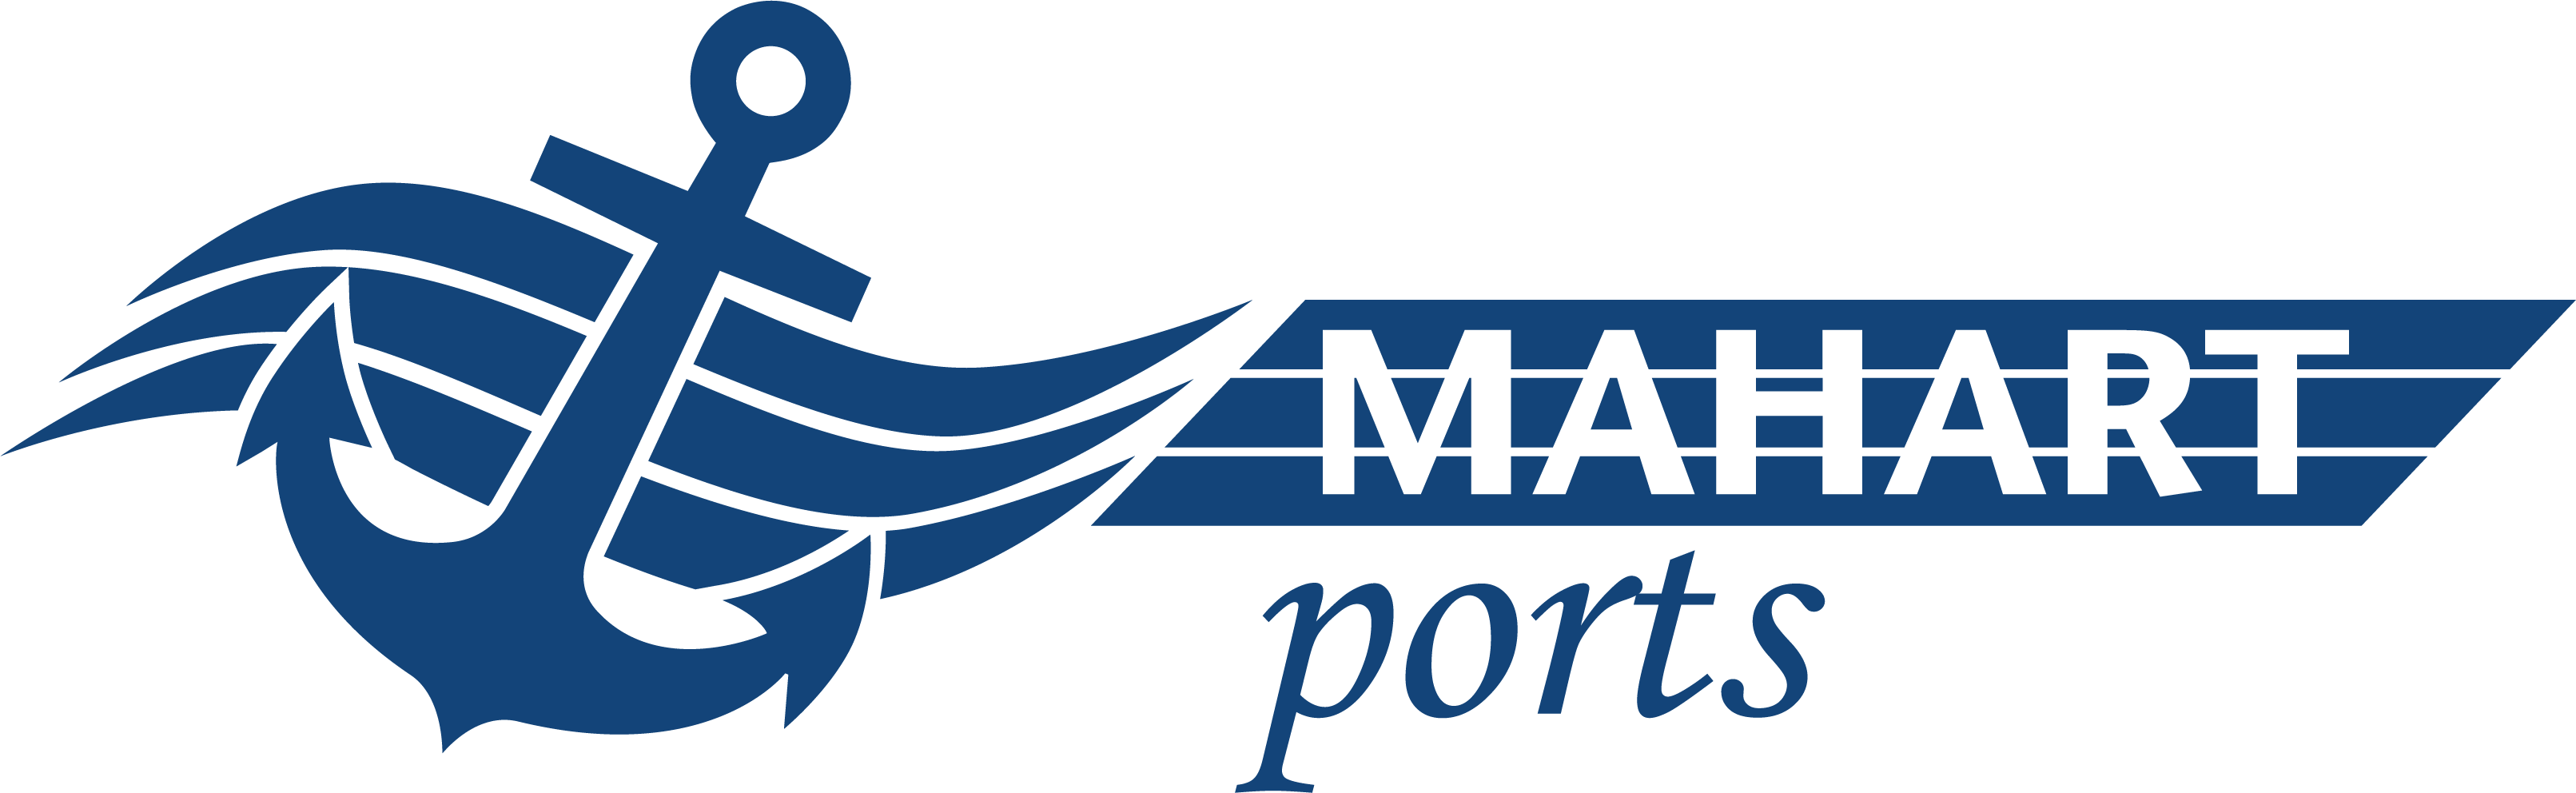 MAHART Ports